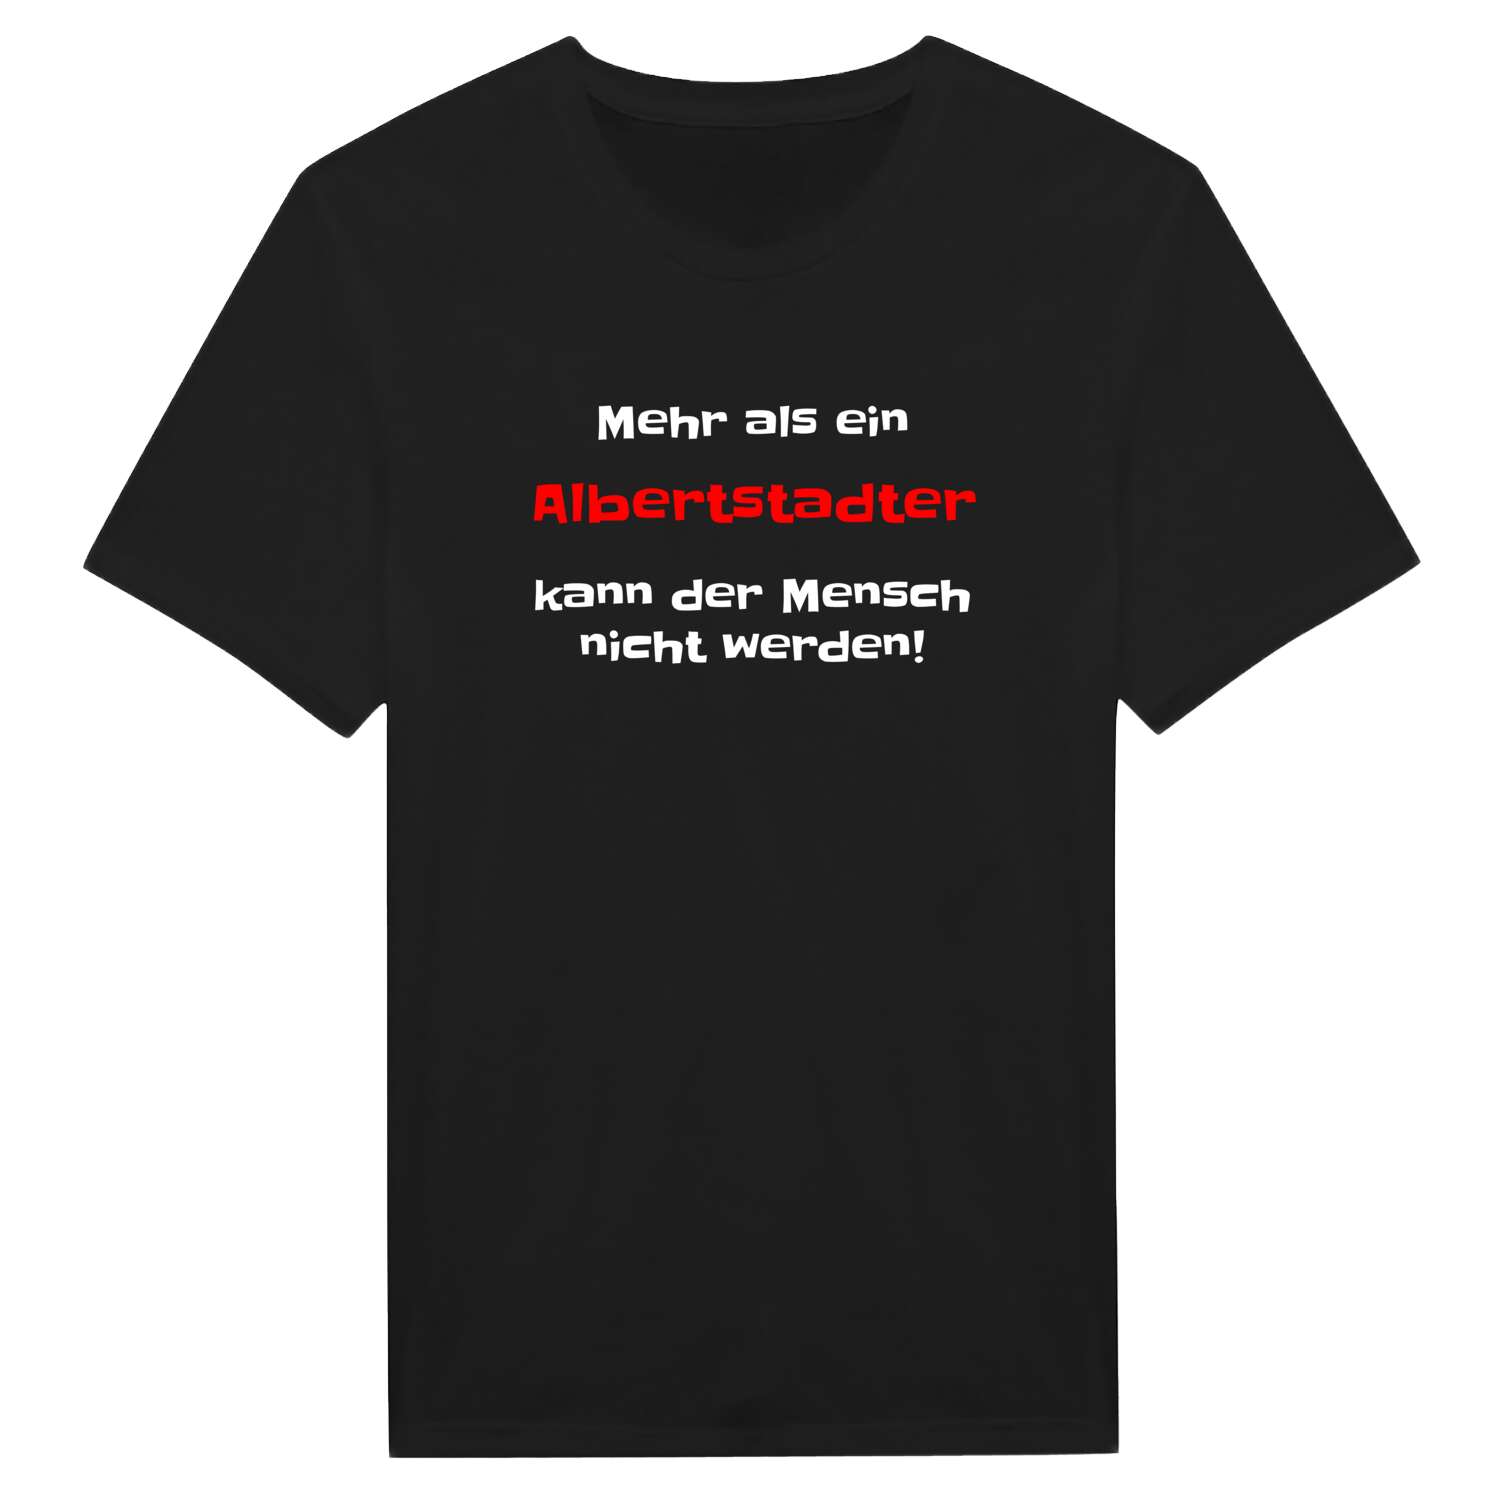 Albertstadt T-Shirt »Mehr als ein«